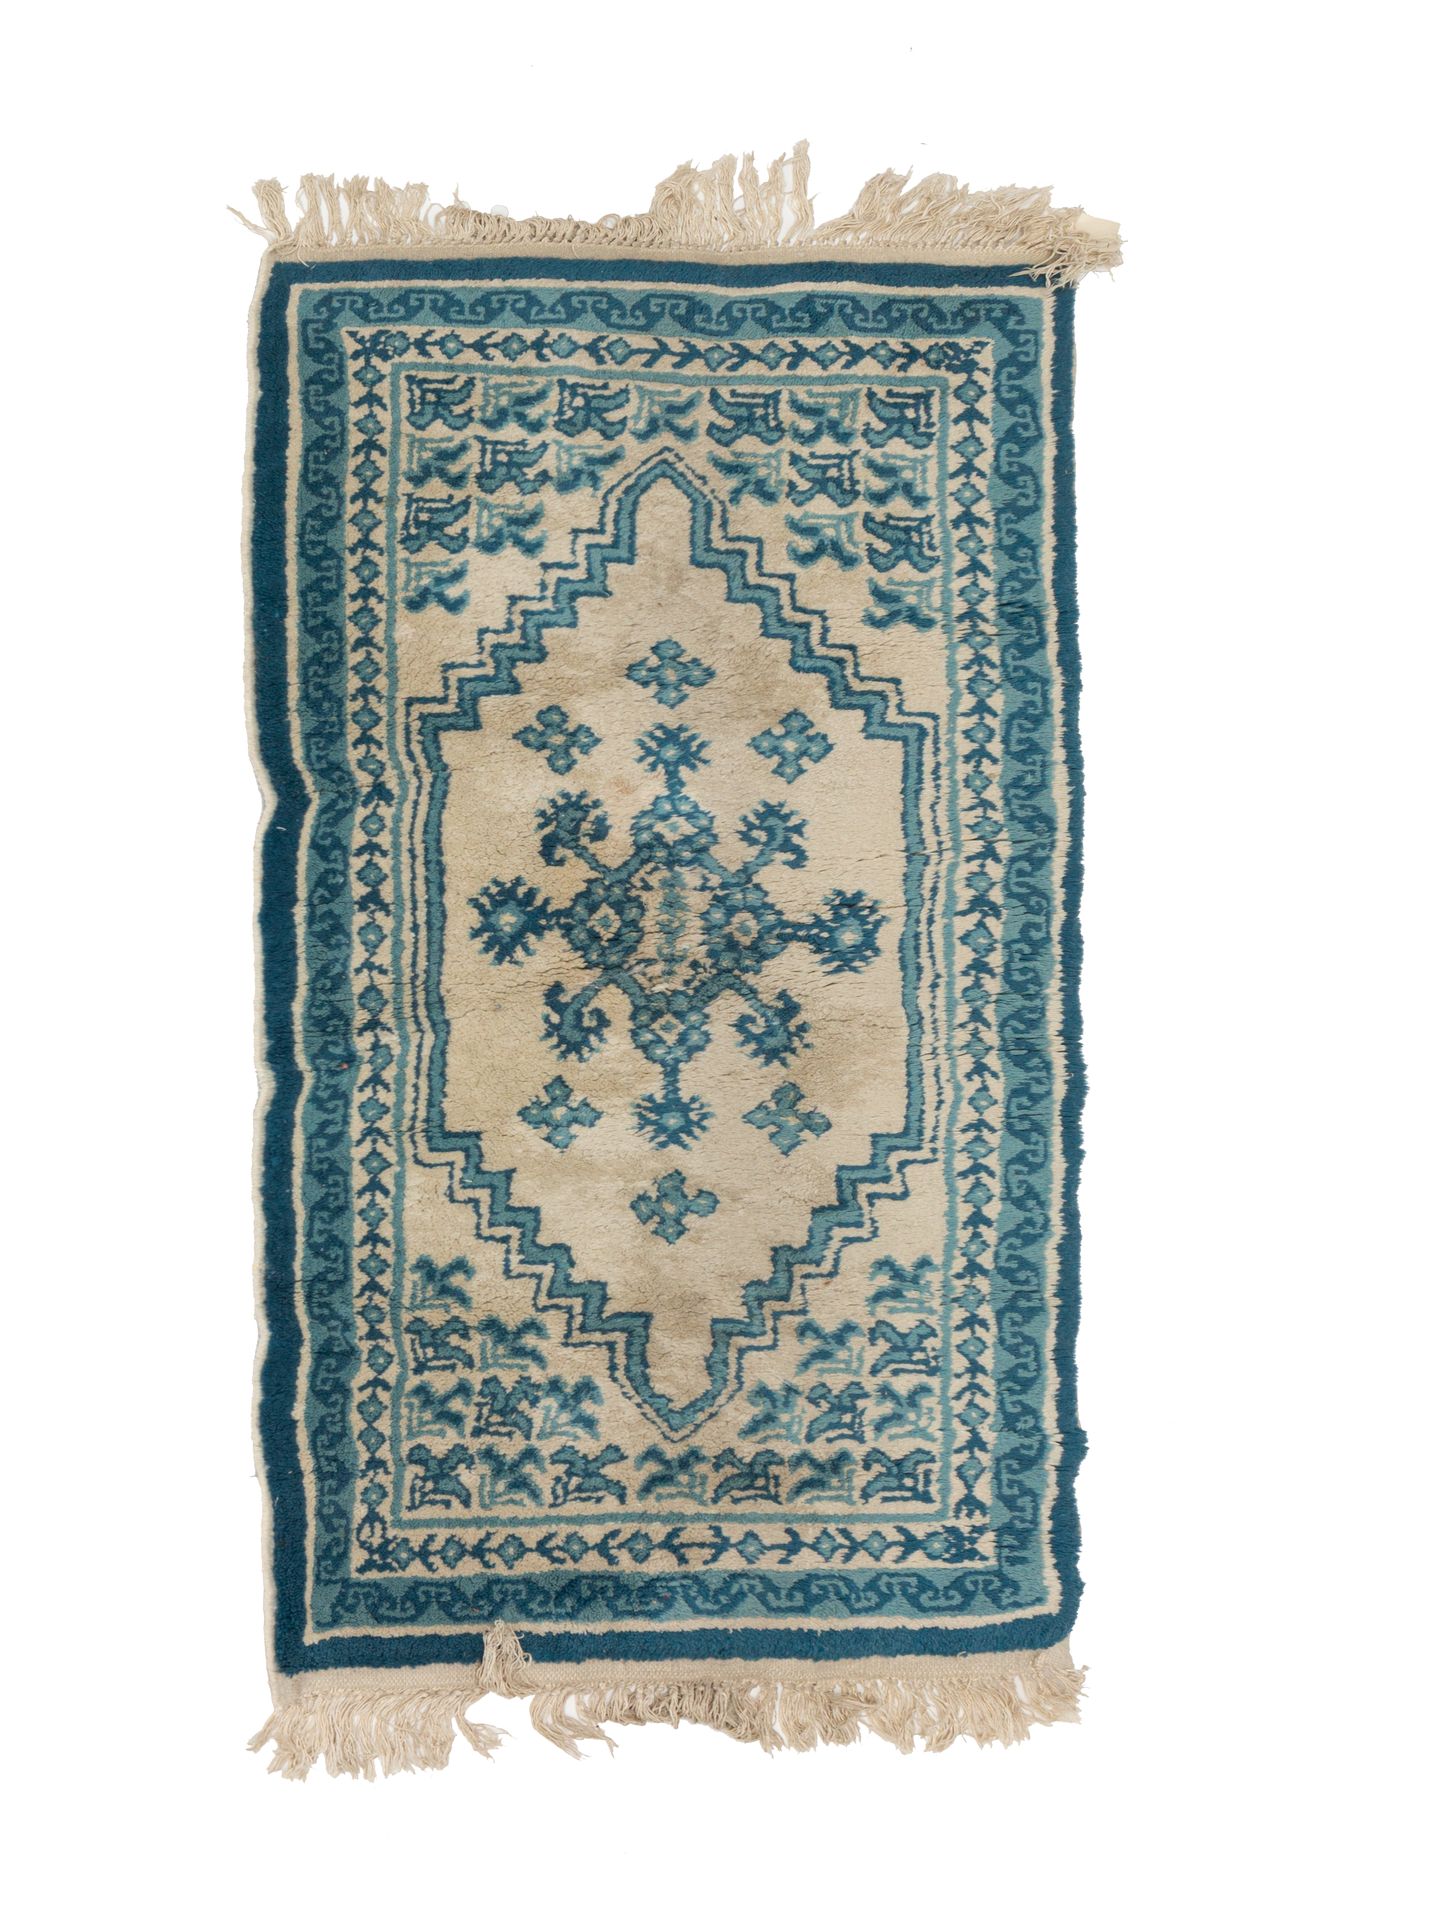 Null 20世纪中期的藏毯

技术特点: 羊毛天鹅绒，棉质底板

象牙色背景，绿松石蓝色几何花纹装饰

总体状况良好

尺寸：137 x 081厘米